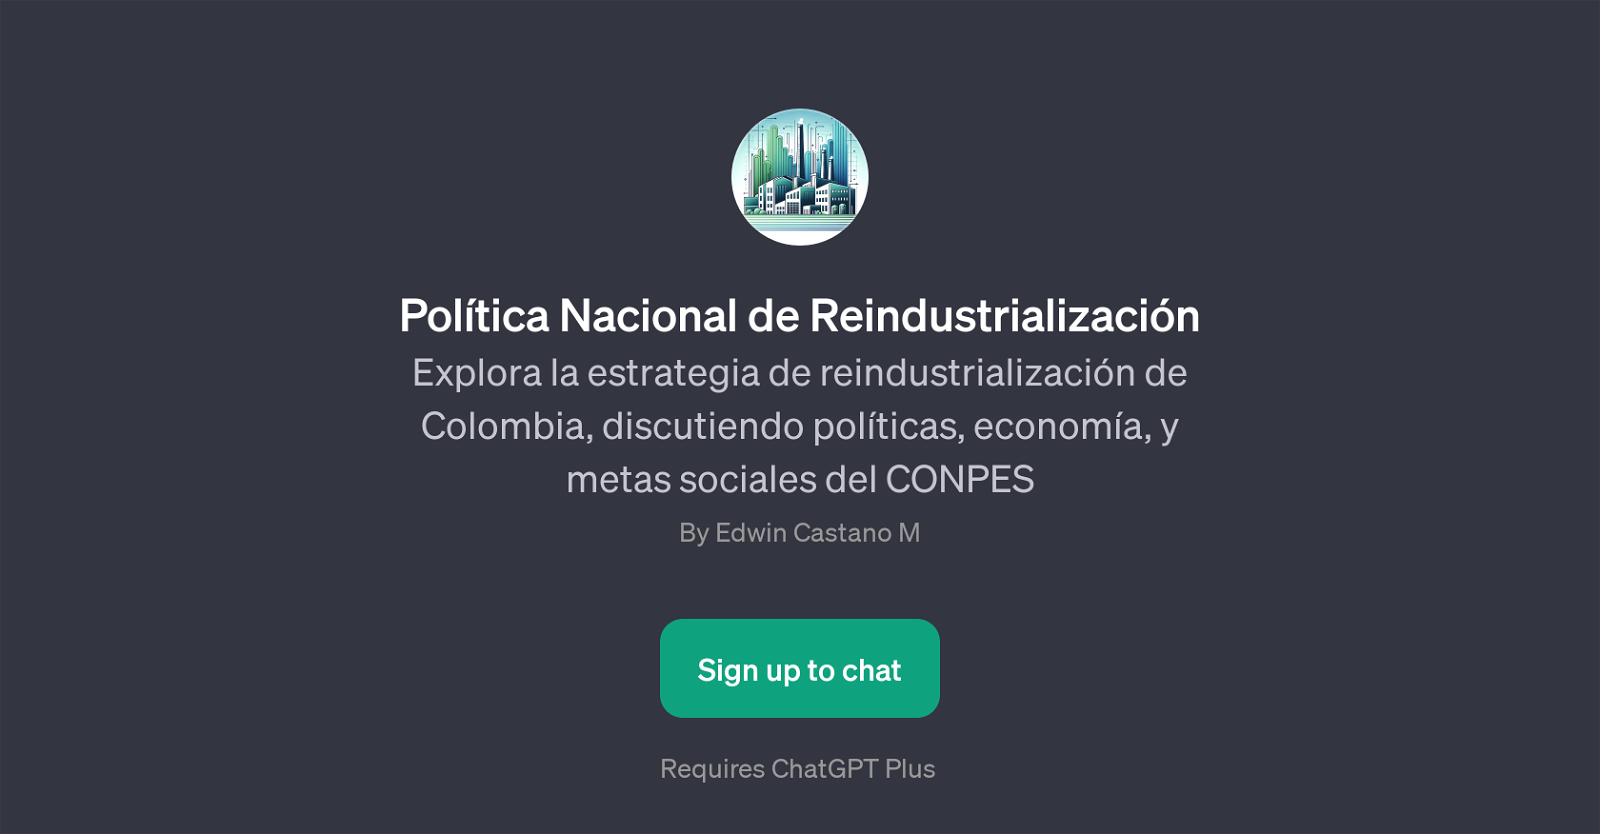 Poltica Nacional de Reindustrializacin website